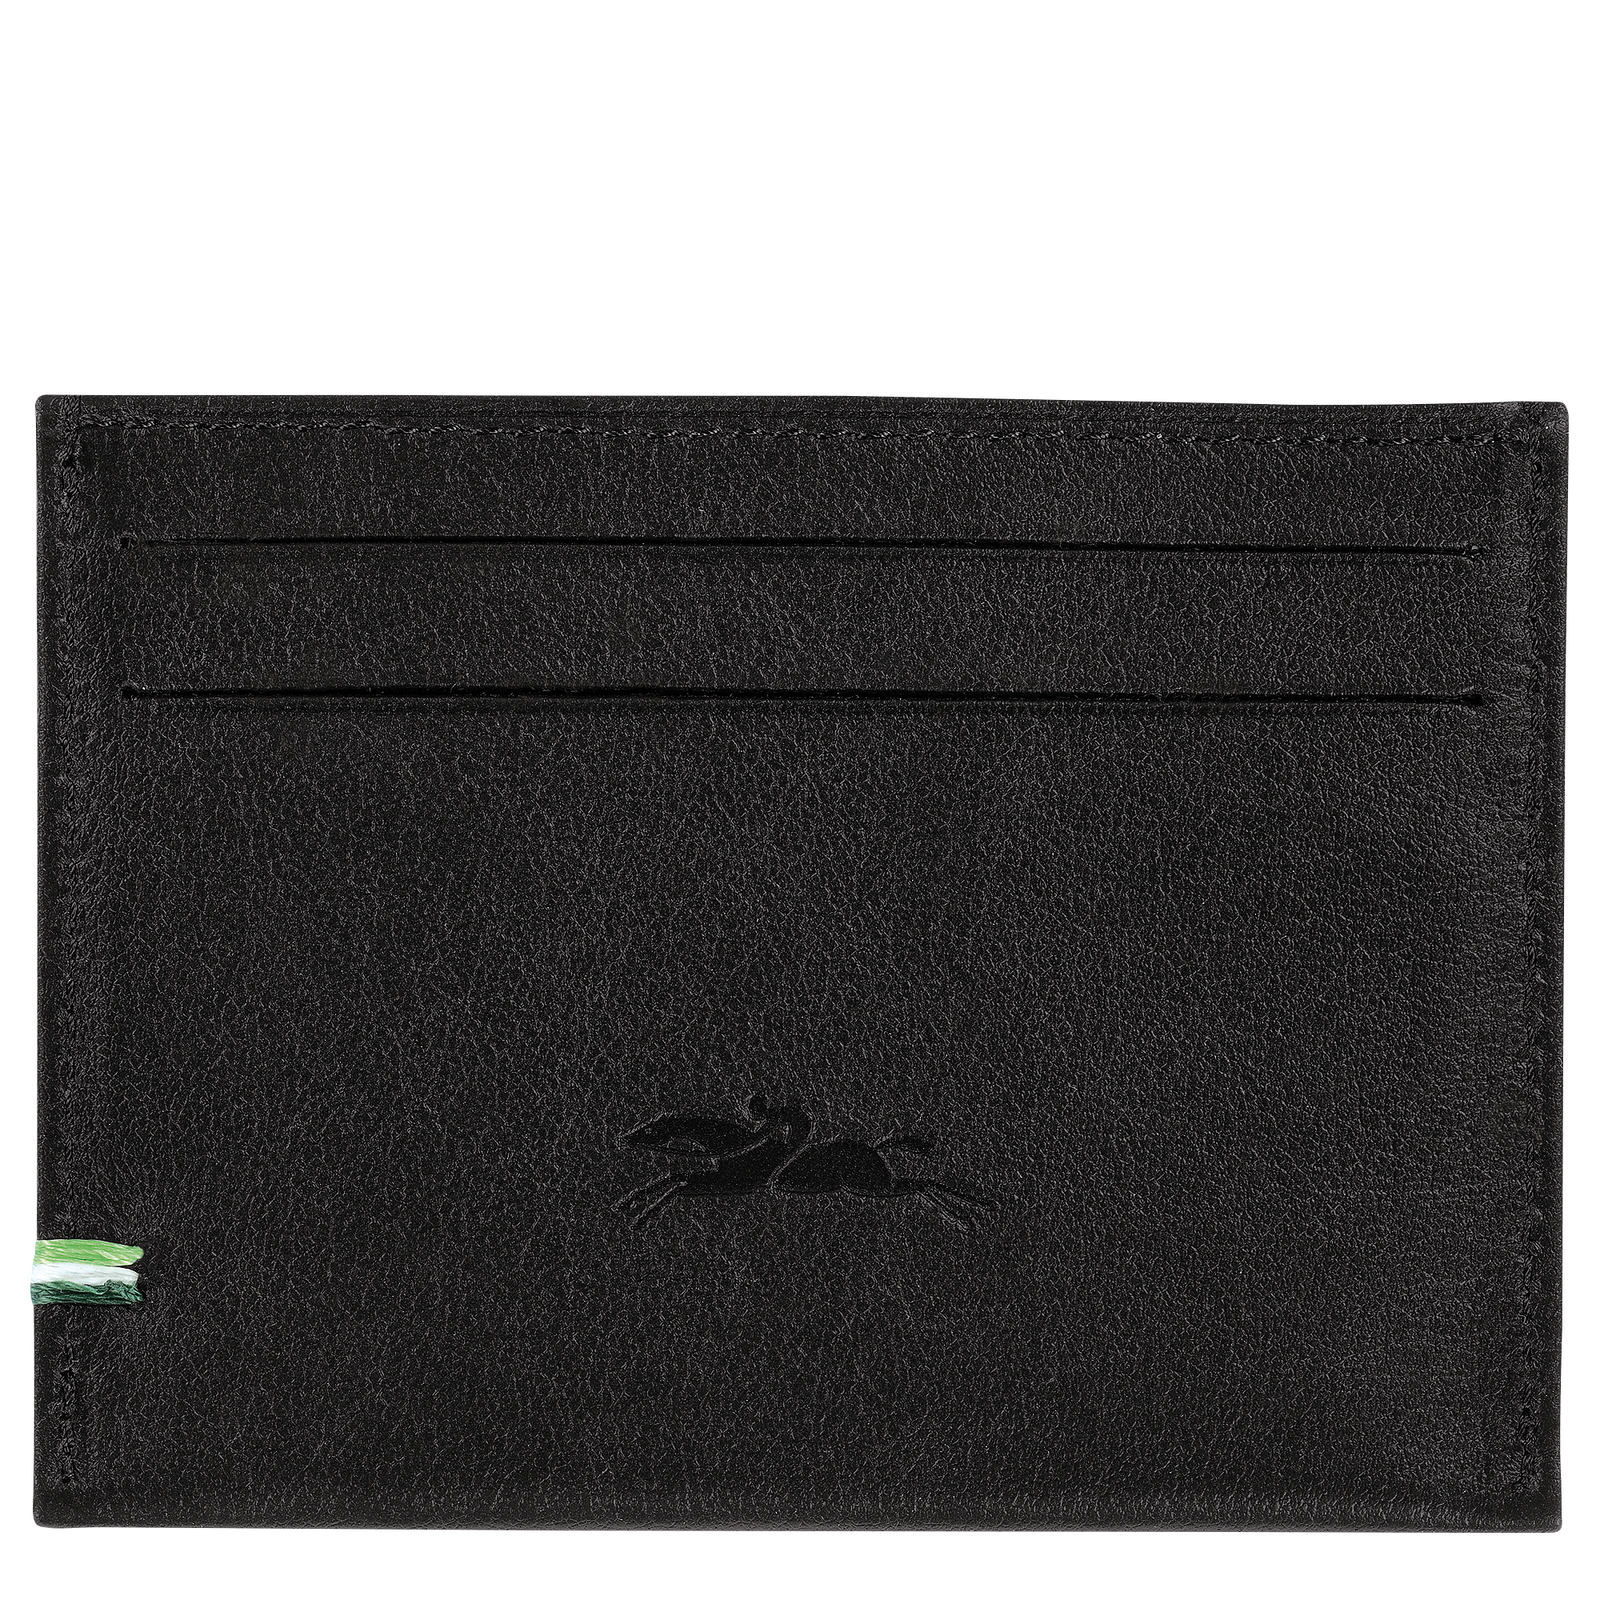 Longchamp sur Seine Card holder, Black